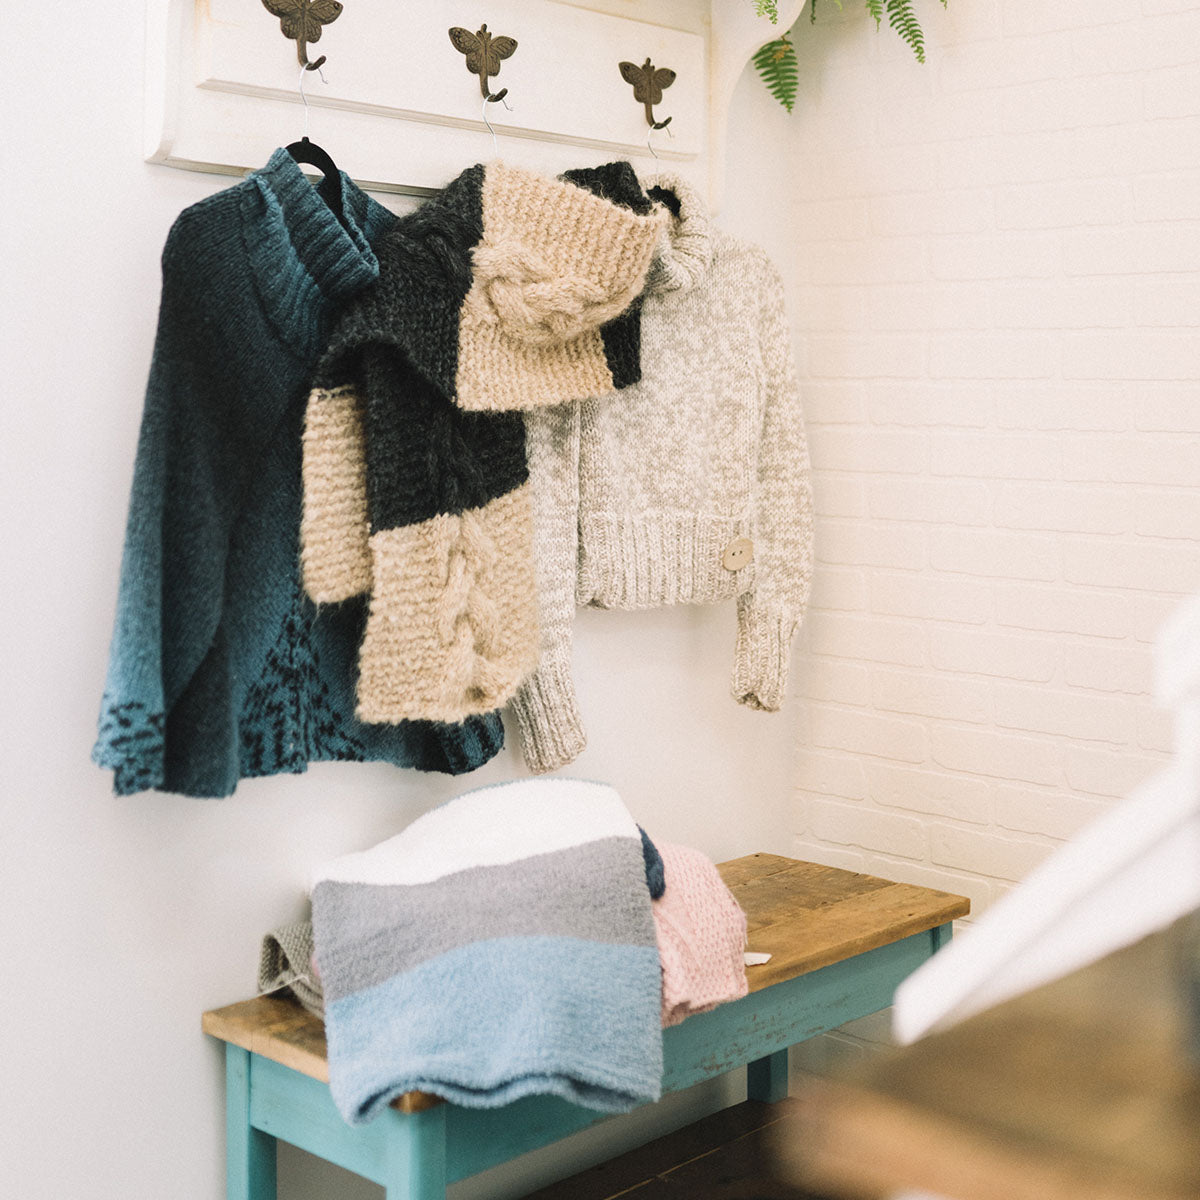 Plusieurs morceaux de vêtement tricotés accrochés au mur de la boutique Phildar café-tricot